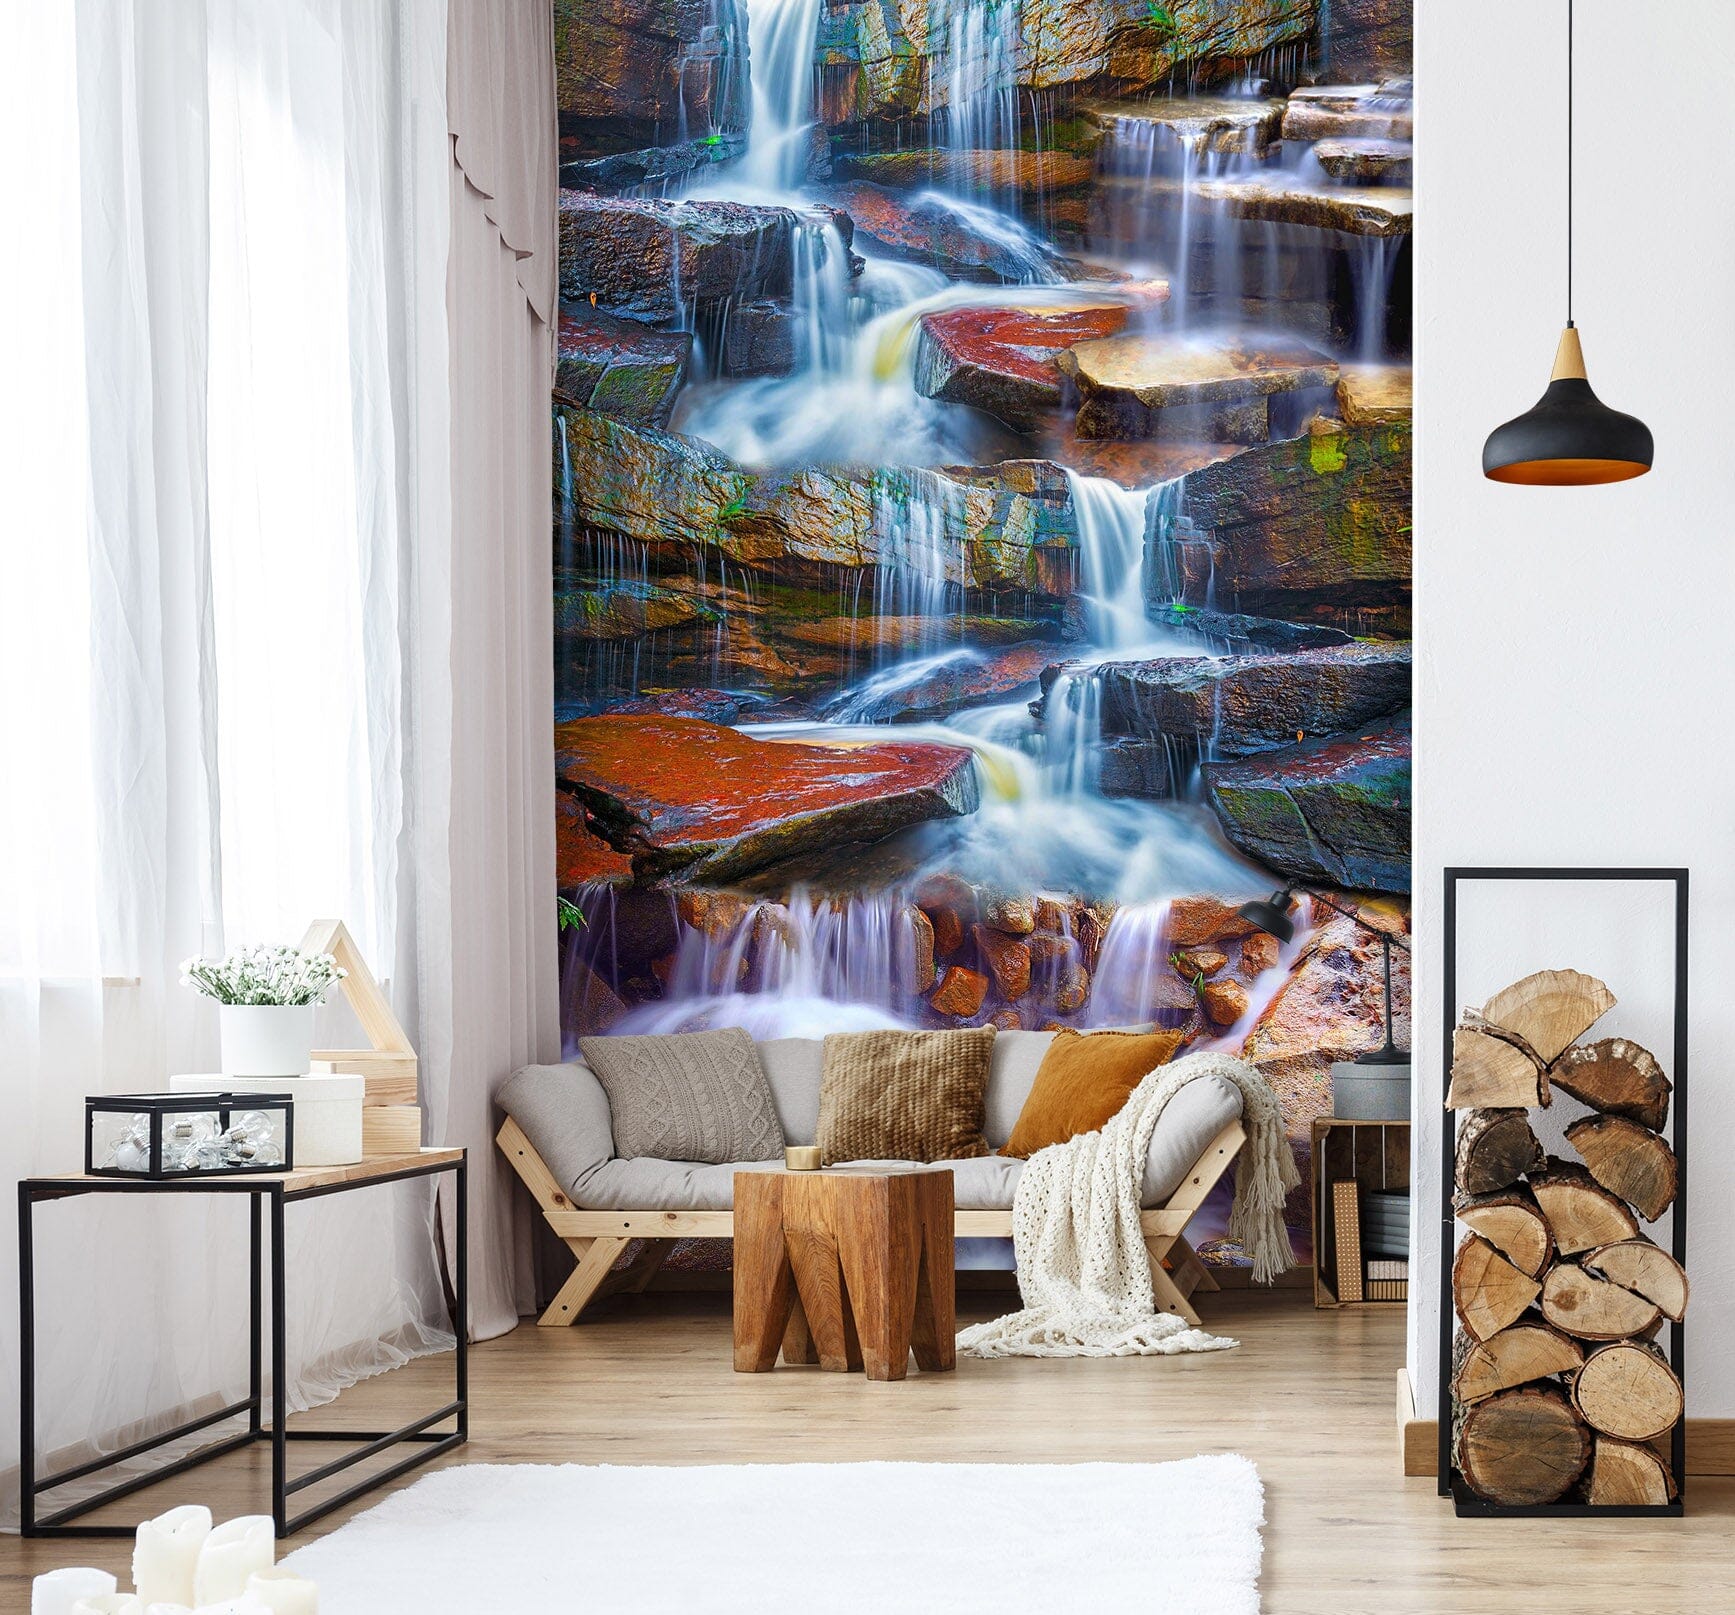 3D Forest Waterfall 1540 Wall Murals Wallpaper AJ Wallpaper 2 